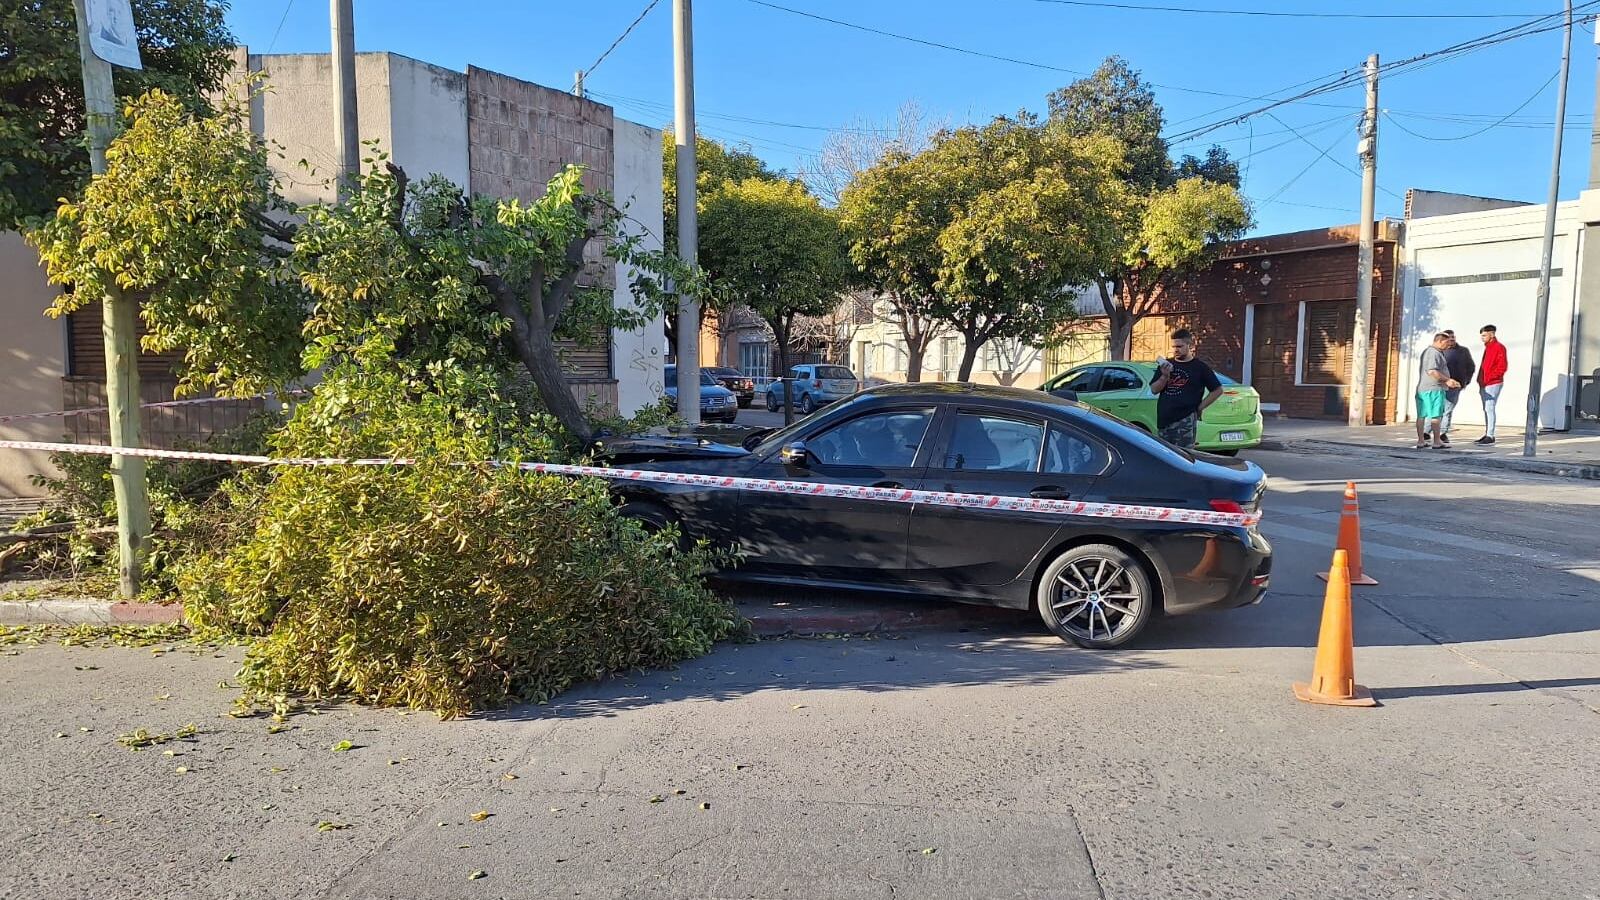 El BMW terminó incrustado en un árbol de una esquina. Foto: Julieta Pelayo / ElDoce.